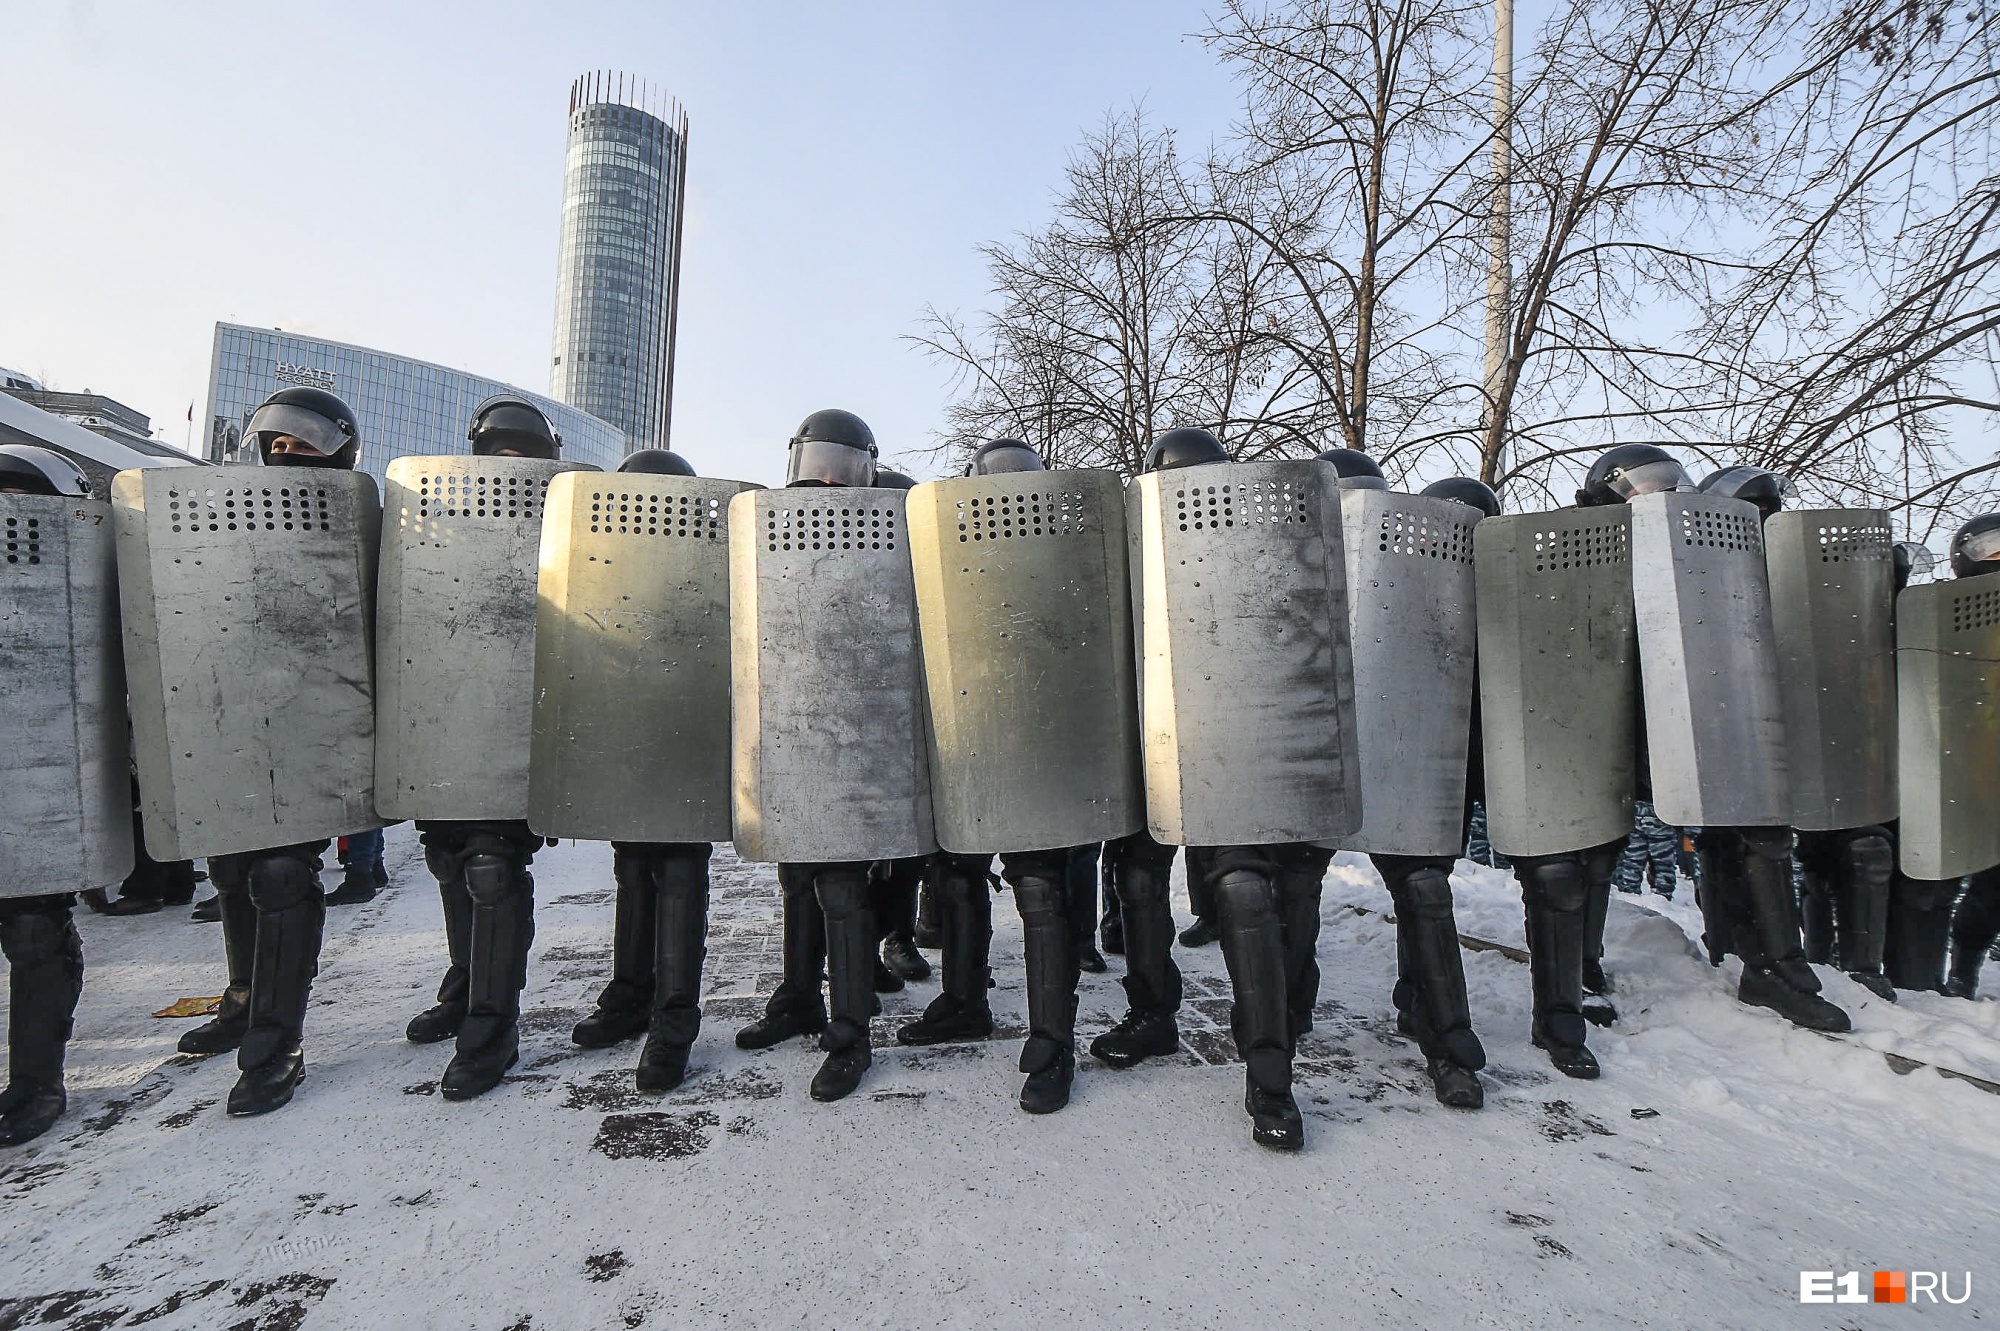 Сколько задержано людей и взорвано дымовых шашек: итоги екатеринбургской акции протеста в цифрах